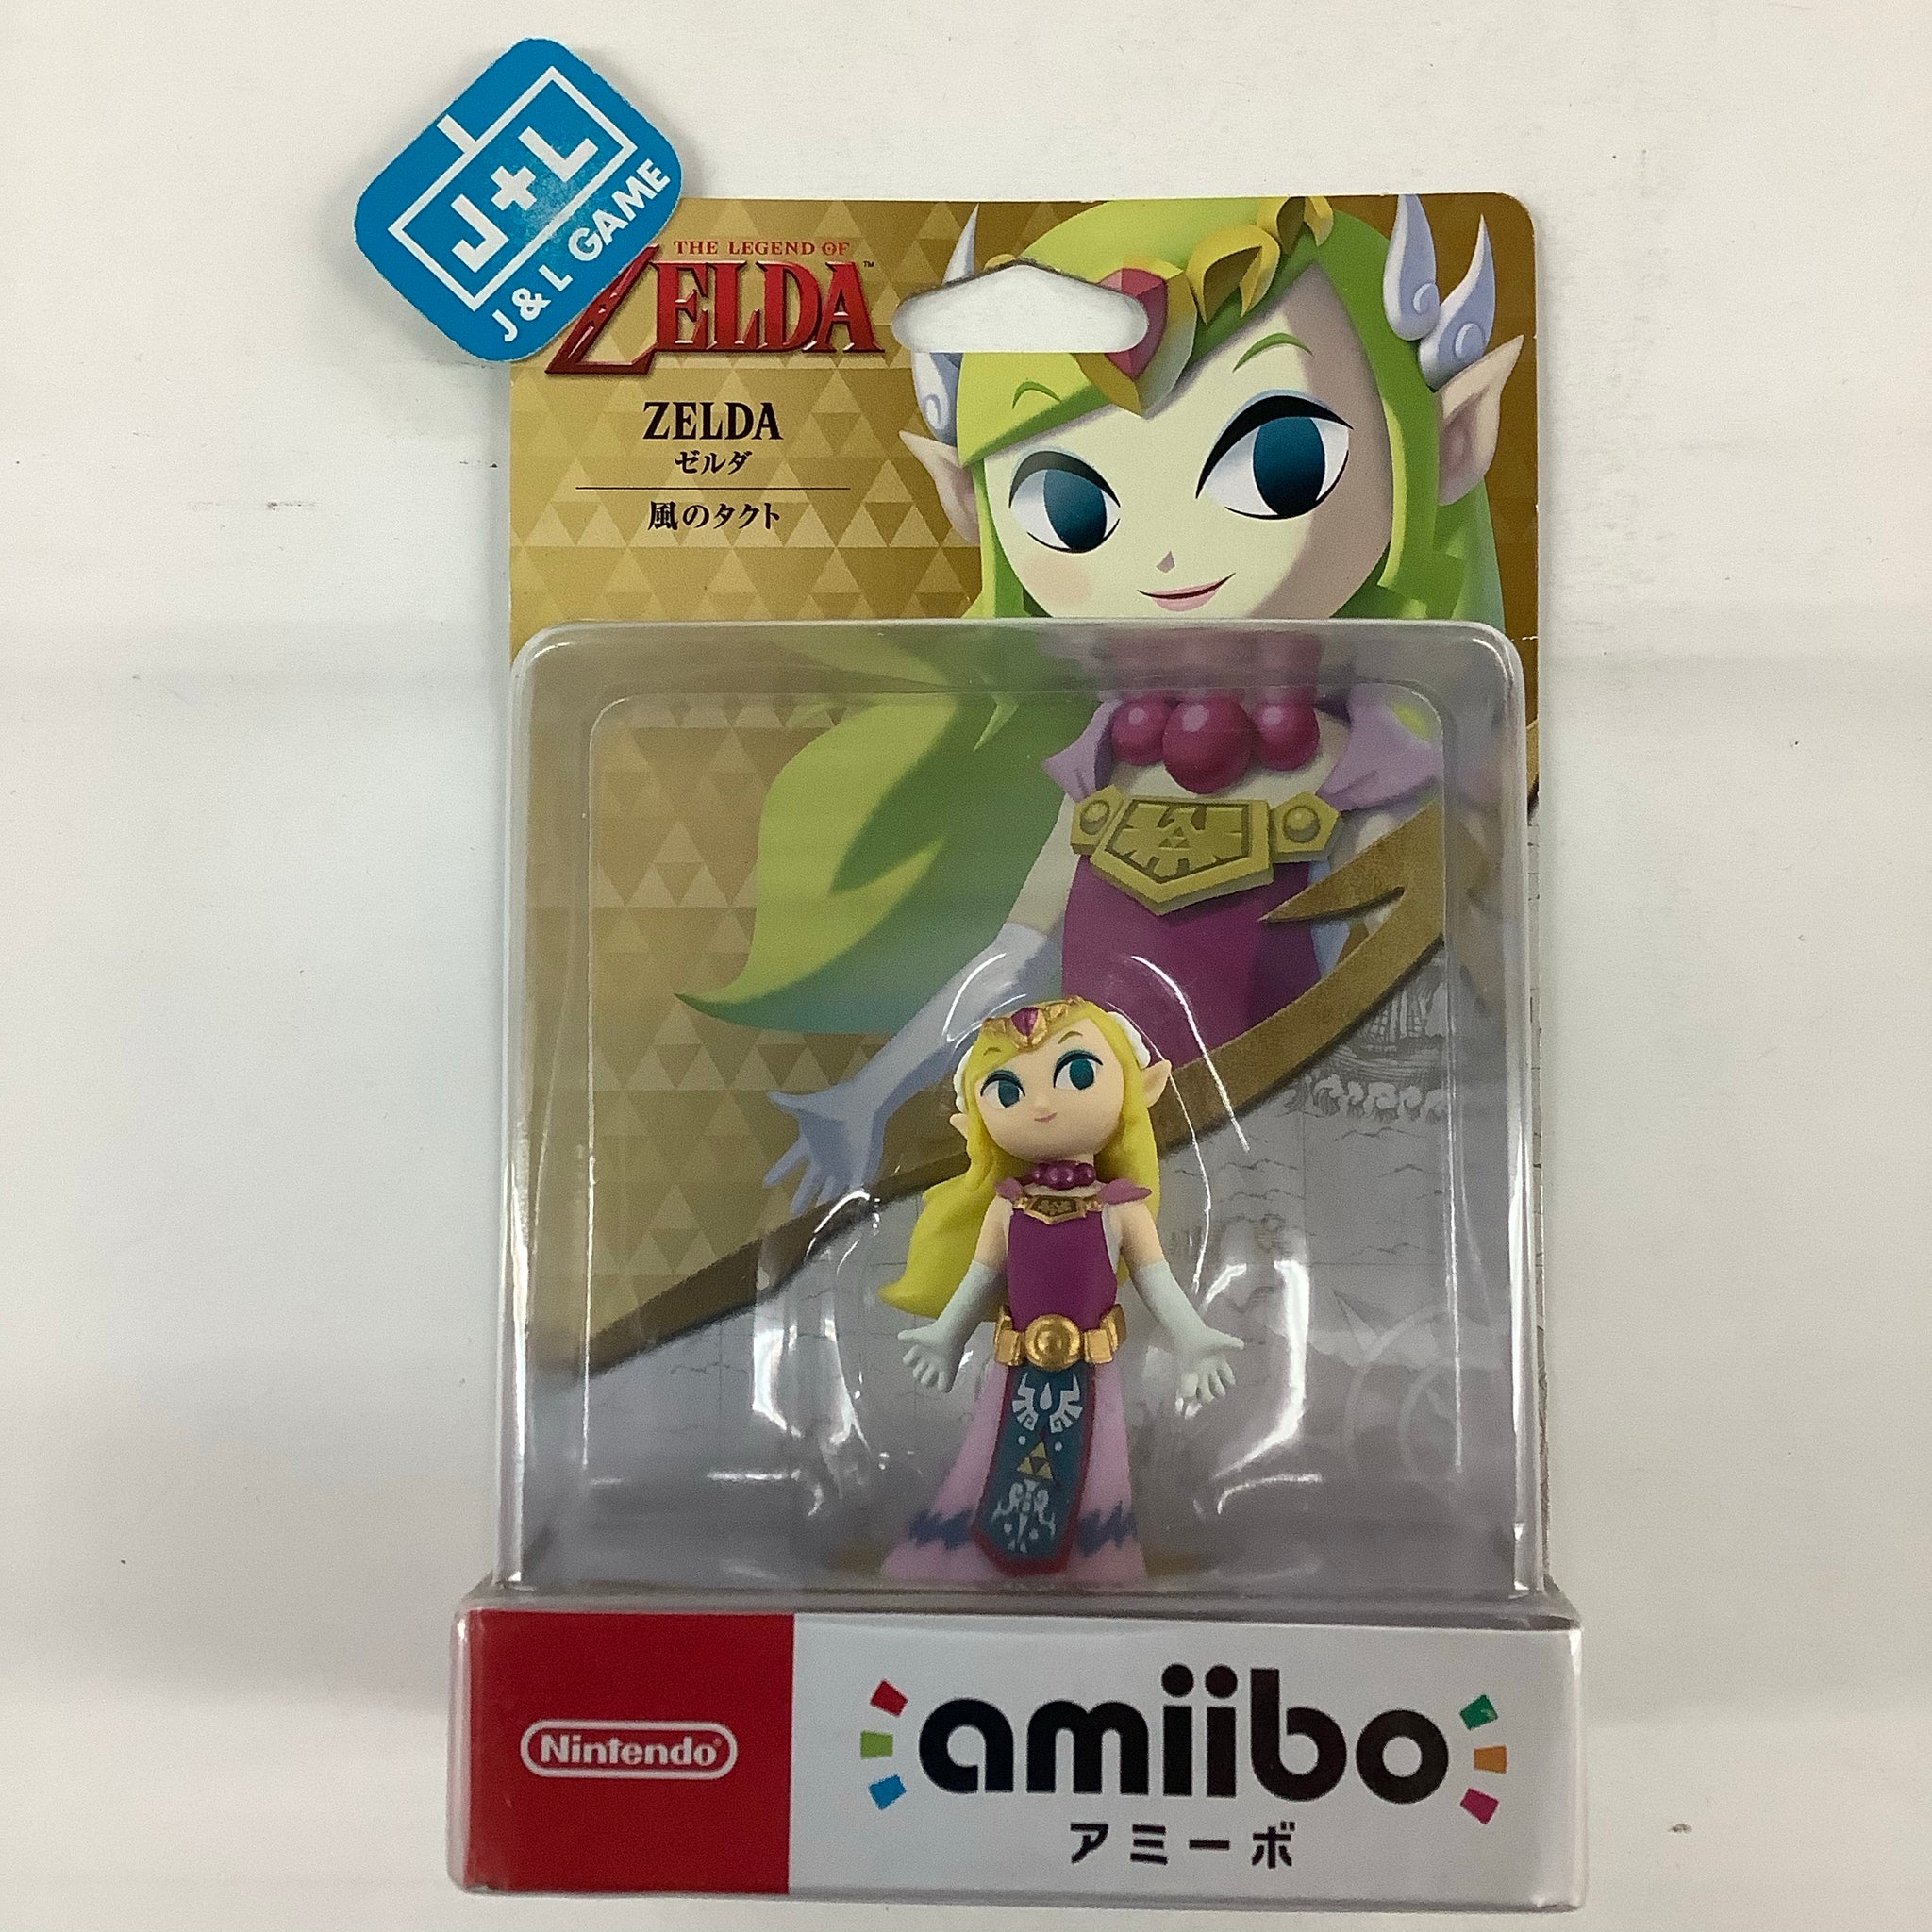 Zelda (The Legend of Zelda: The Wind Waker) - Nintendo WiiU Amiibo (Japanese Import) Amiibo Nintendo   